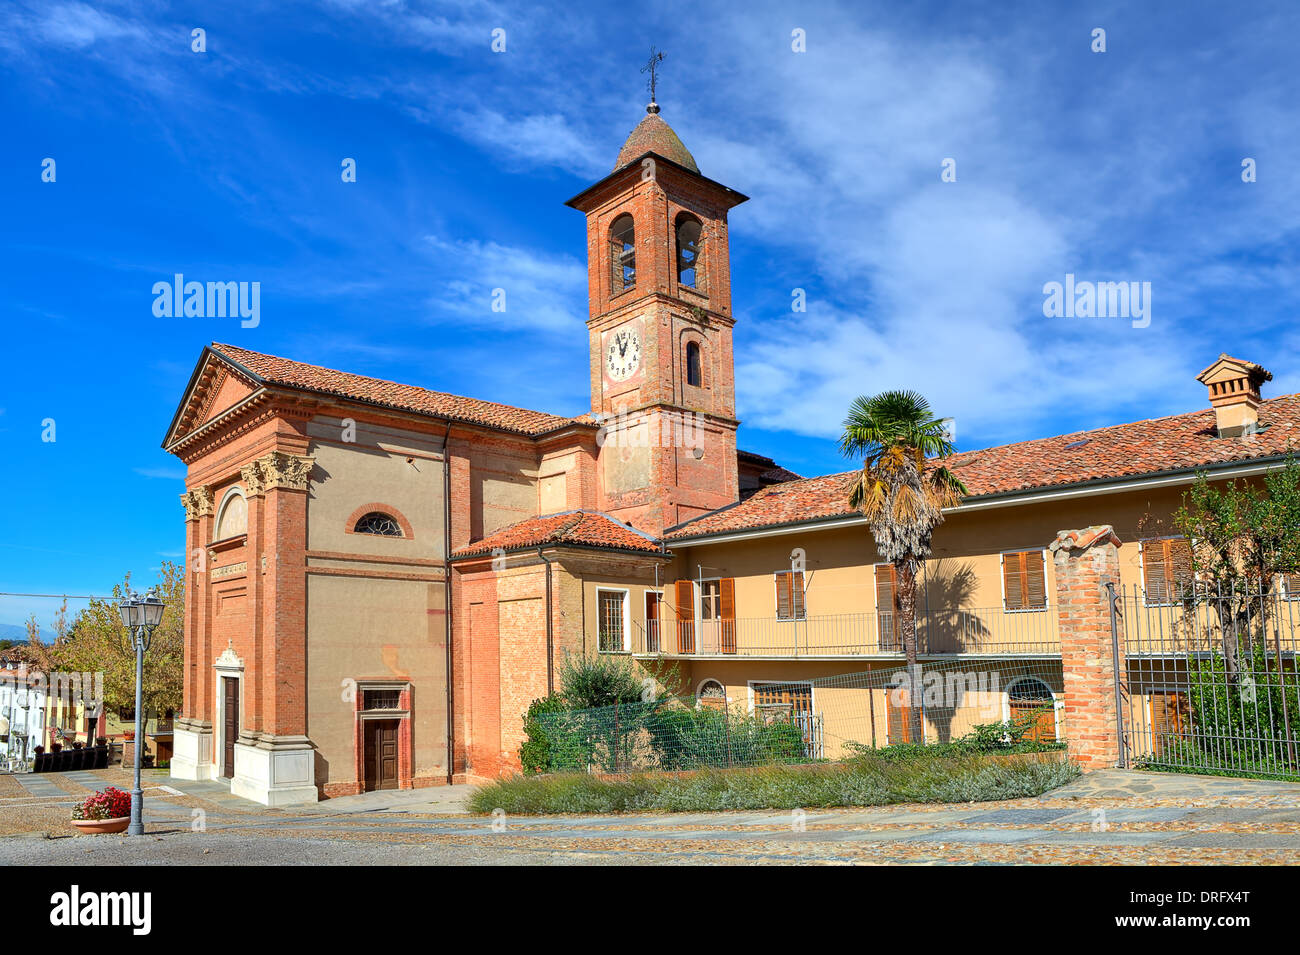 Alte katholische Kirche aus rotem Backstein am Stadtplatz unter blauem Himmel im kleinen Ort Grinzane Cavour in Piemont, Italien. Stockfoto